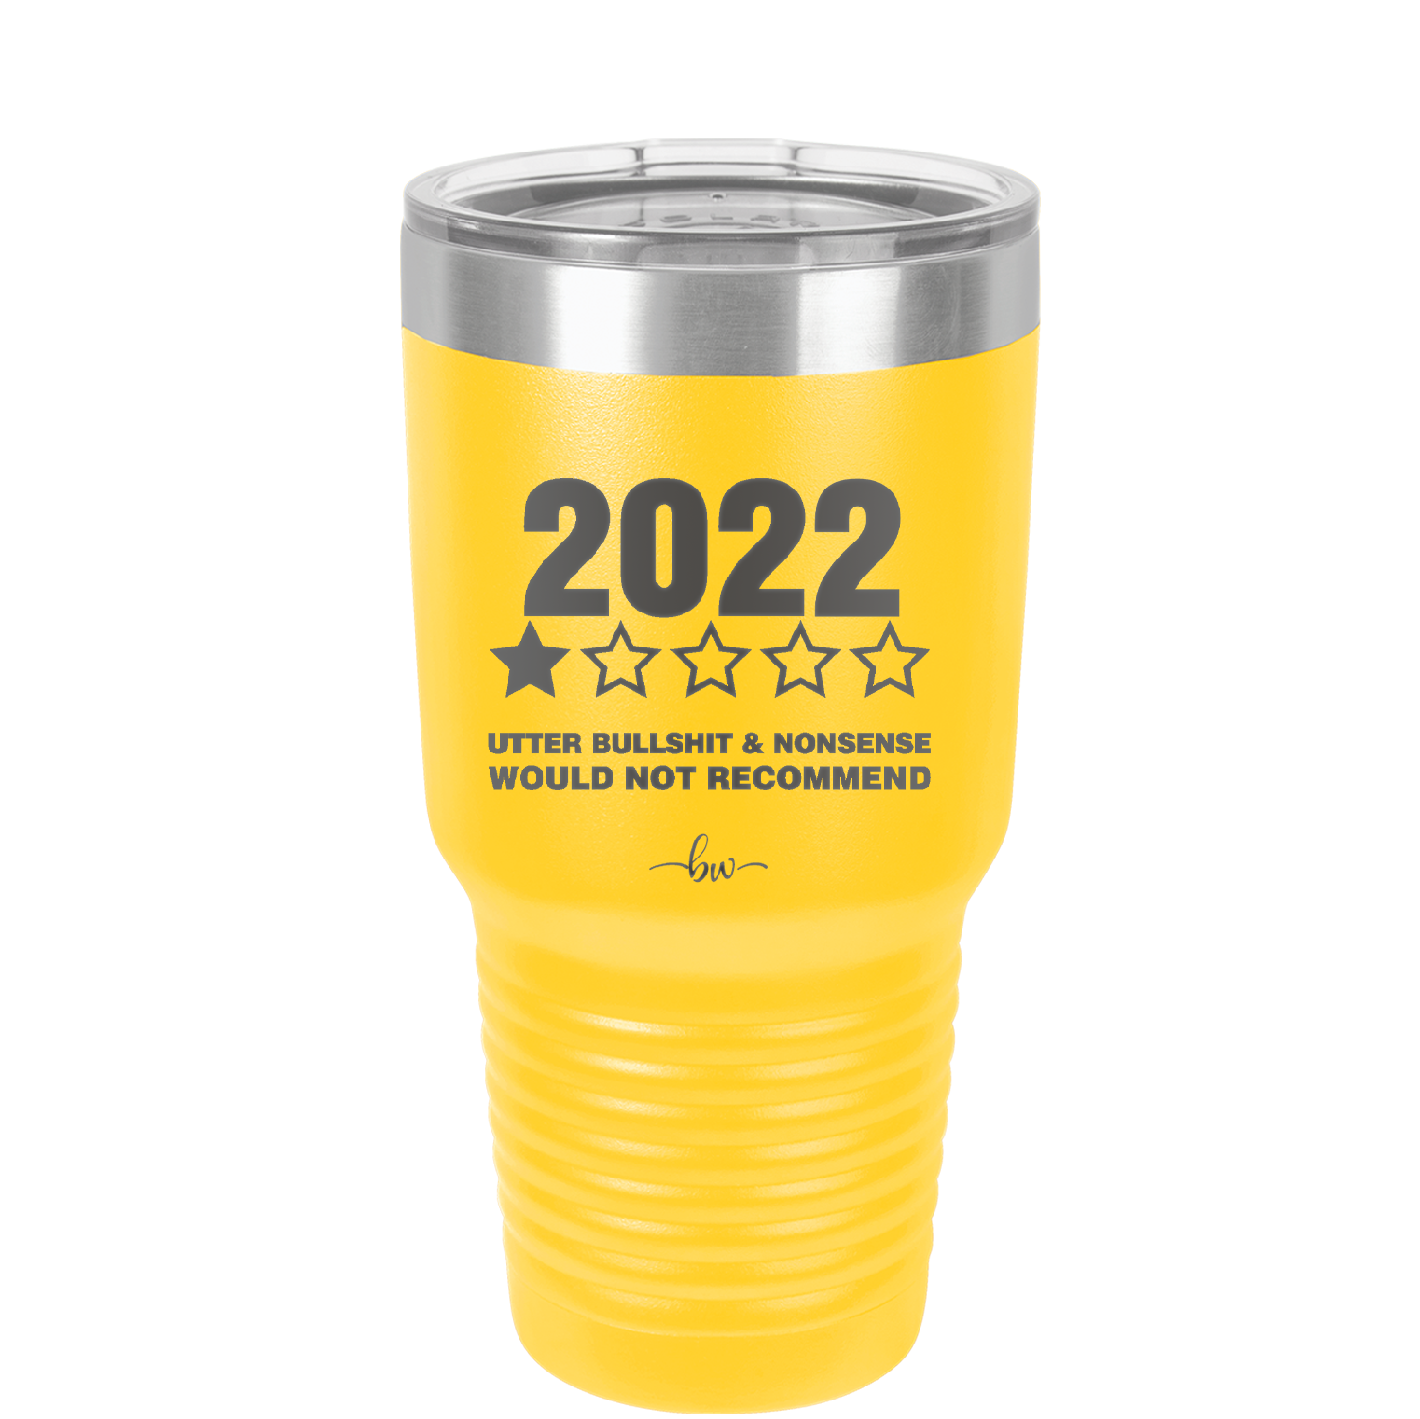 30 oz 2022 utter bullshitt and nonsense would not recommend- yellow